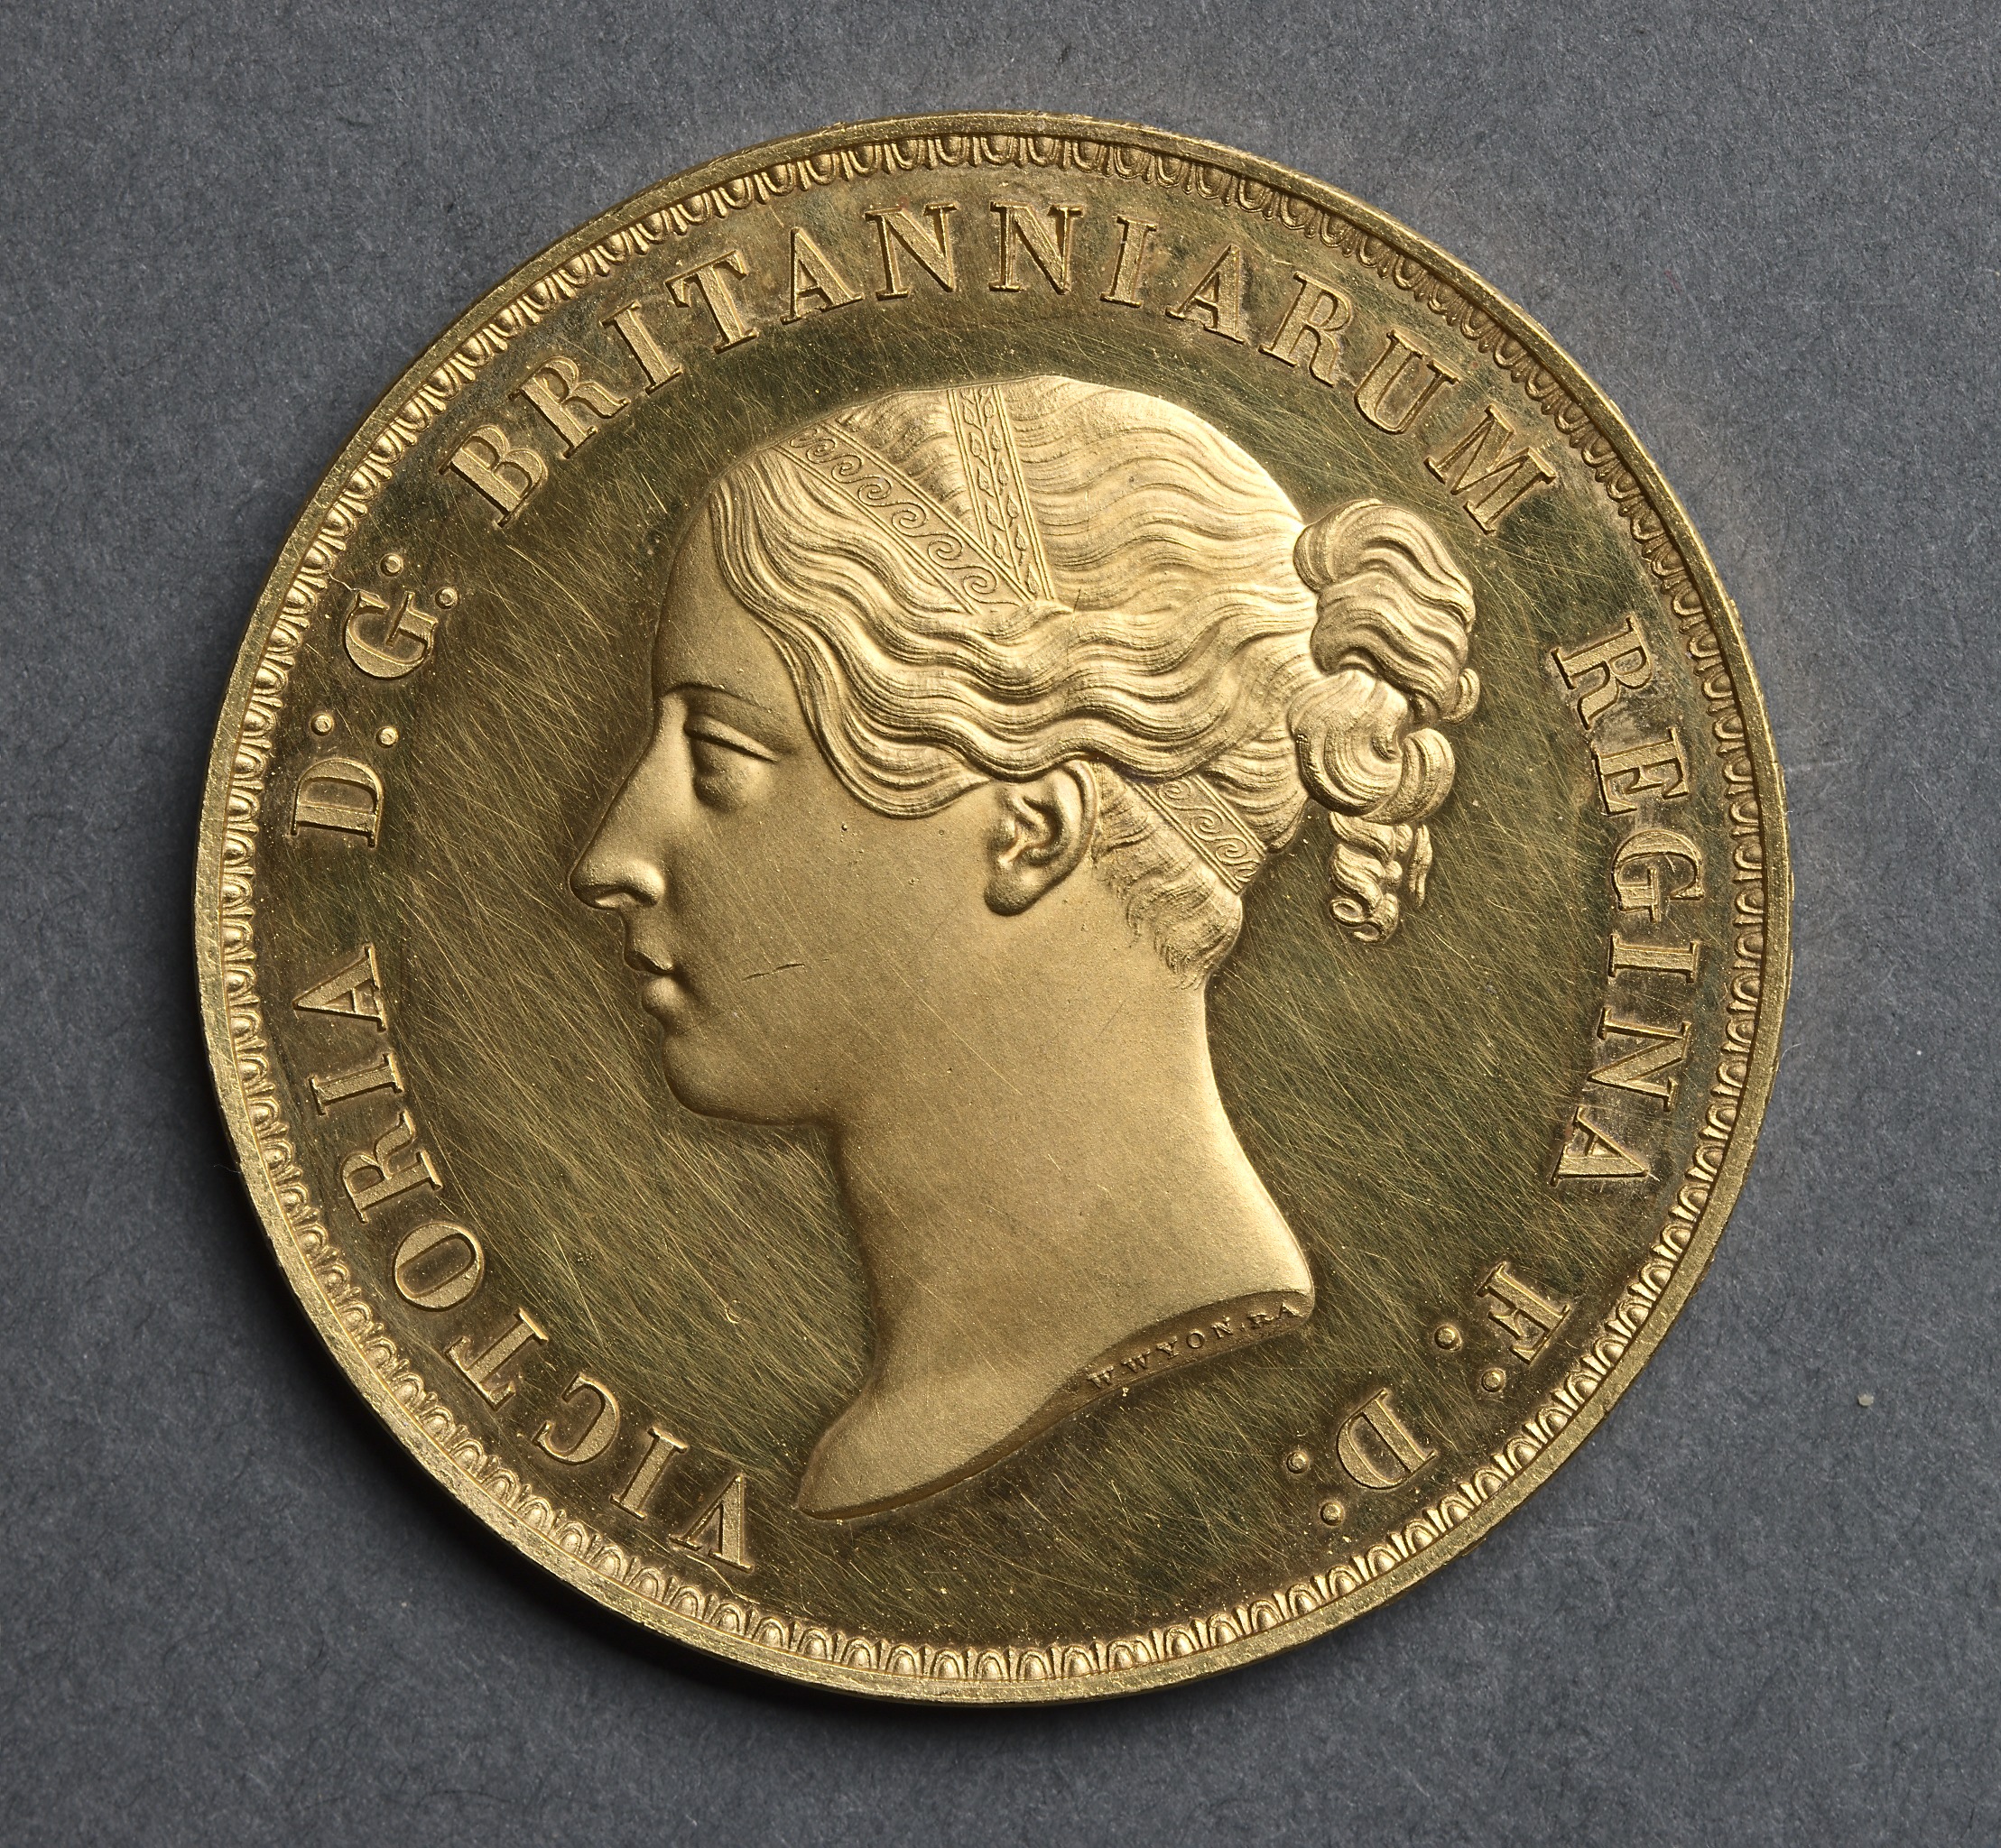 Five Pound Piece: Portrait of Queen Victoria (obverse)